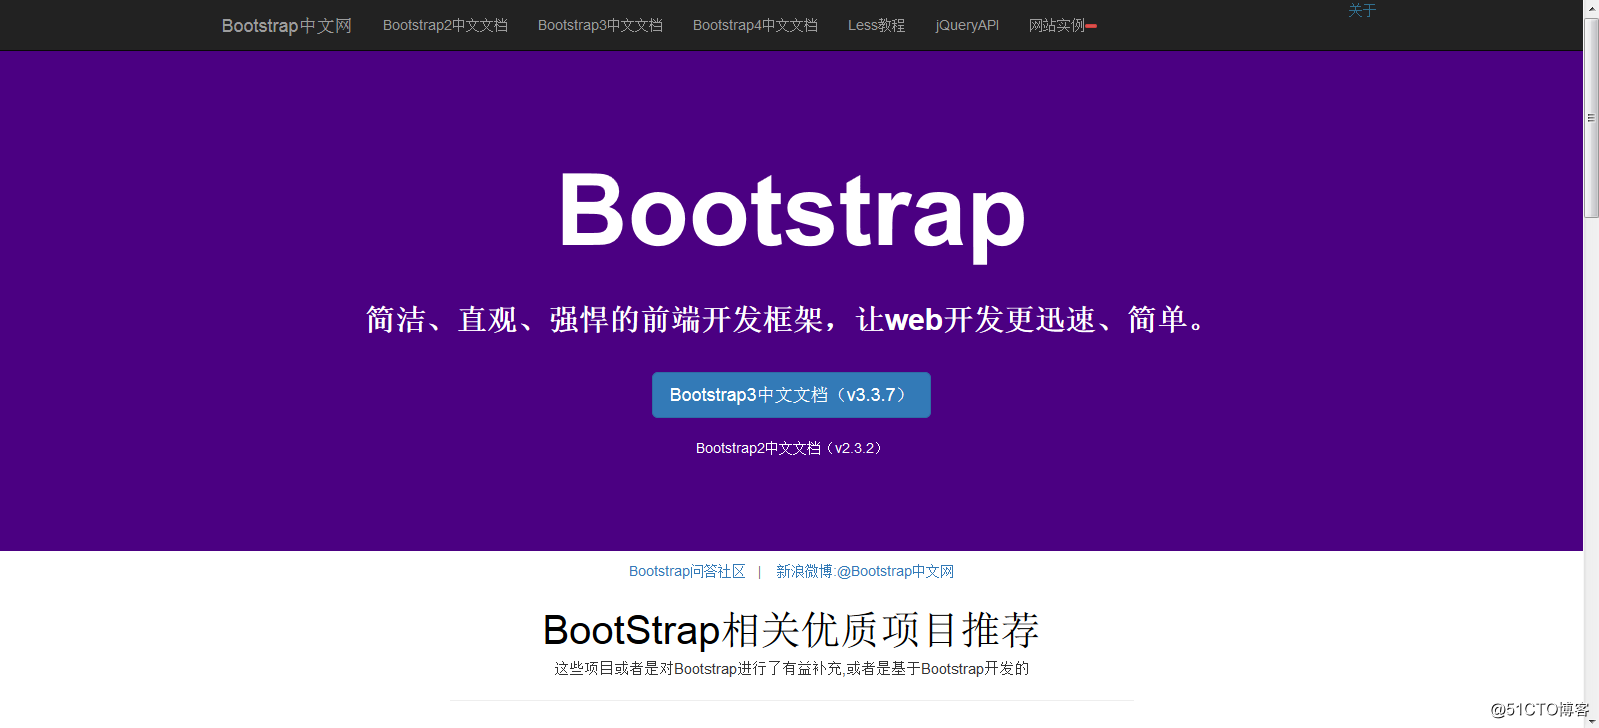 用Bootstrap知识写简易版Bootstrap官方网站首页